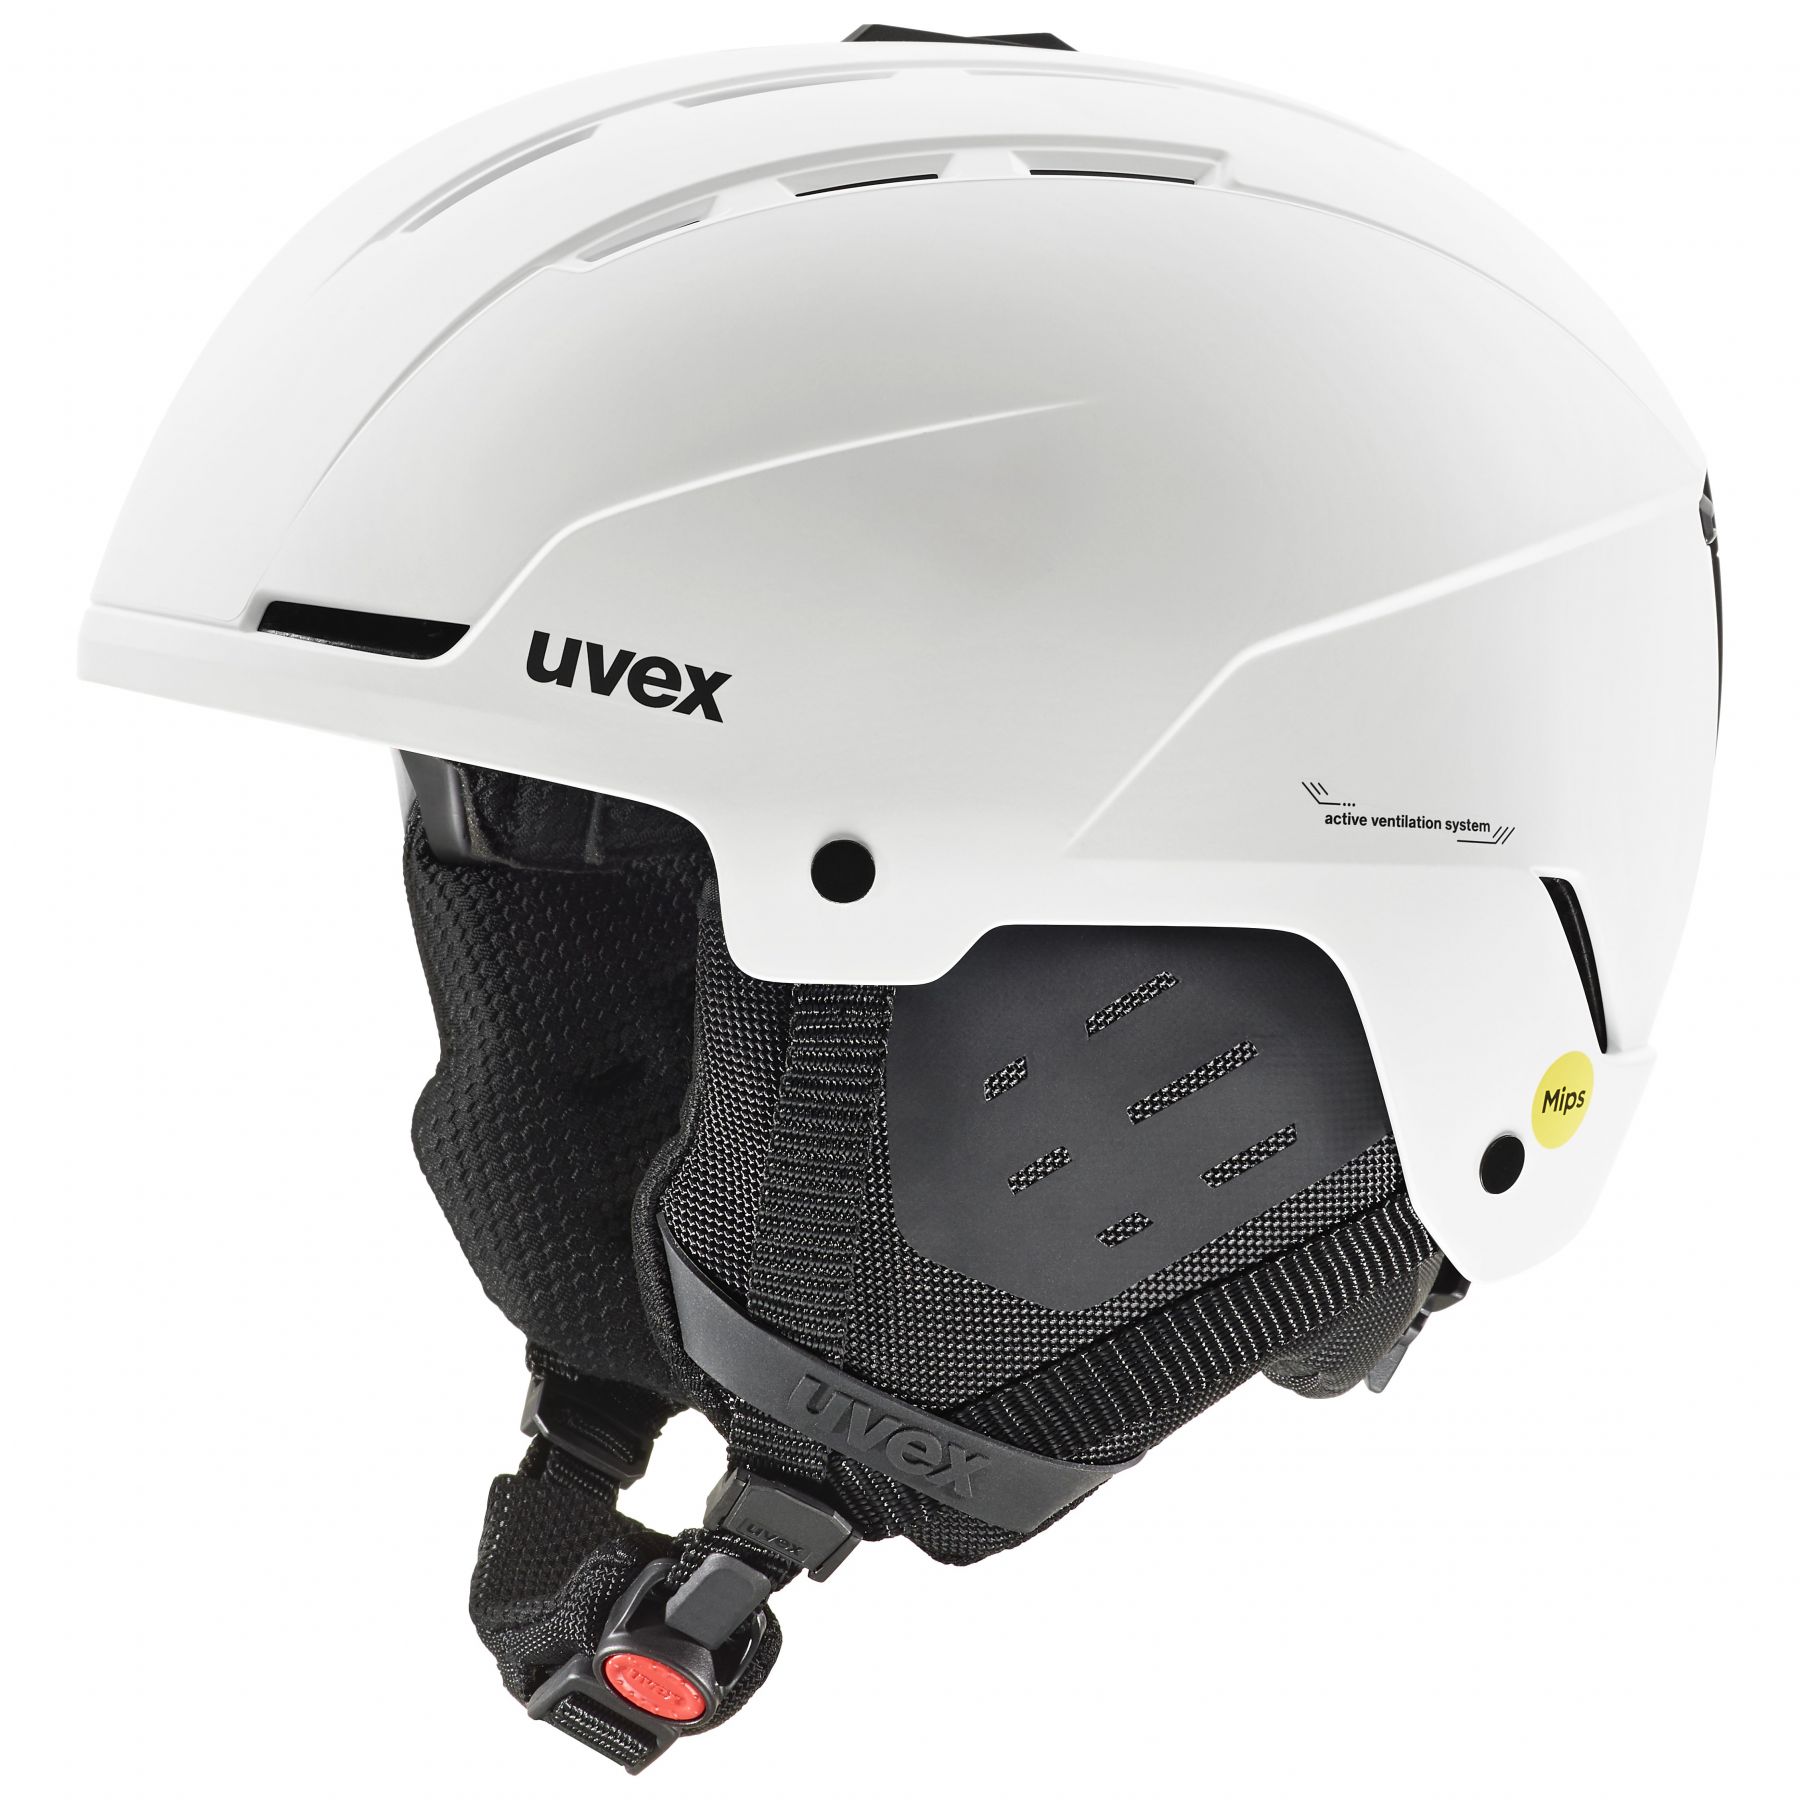 Brug Uvex Stance MIPS, skihjelm, hvid til en forbedret oplevelse